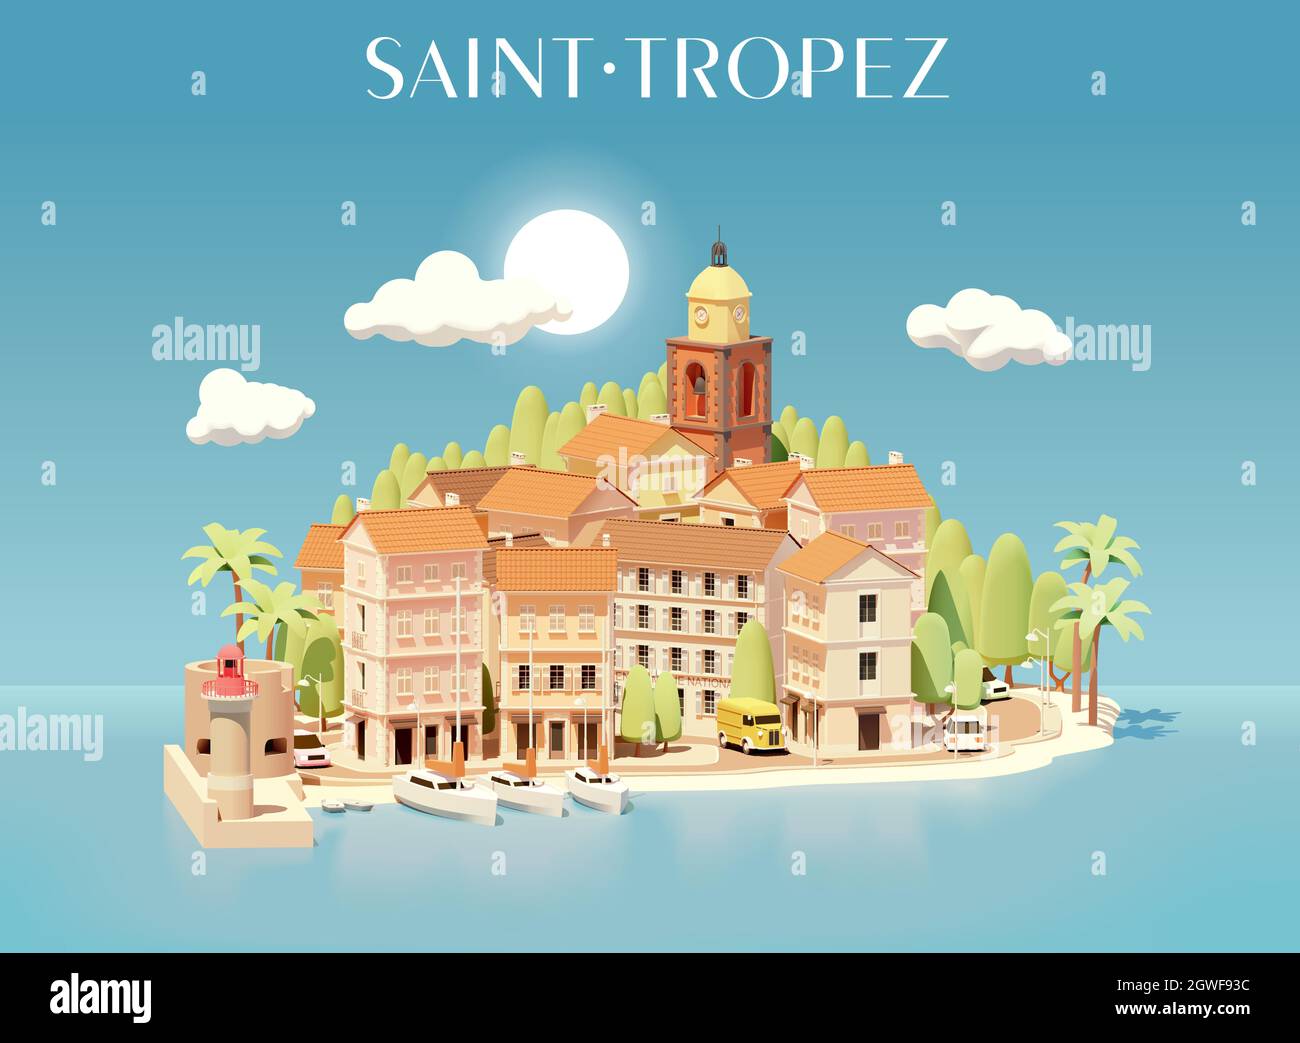 Vektor Saint-Tropez, Frankreich, Stadtbild Illustration. Blick auf die Stadt vom Meer. Gebäude, Straßen, Hafen mit Yachten, Kirchturm, Leuchtturm Stock Vektor